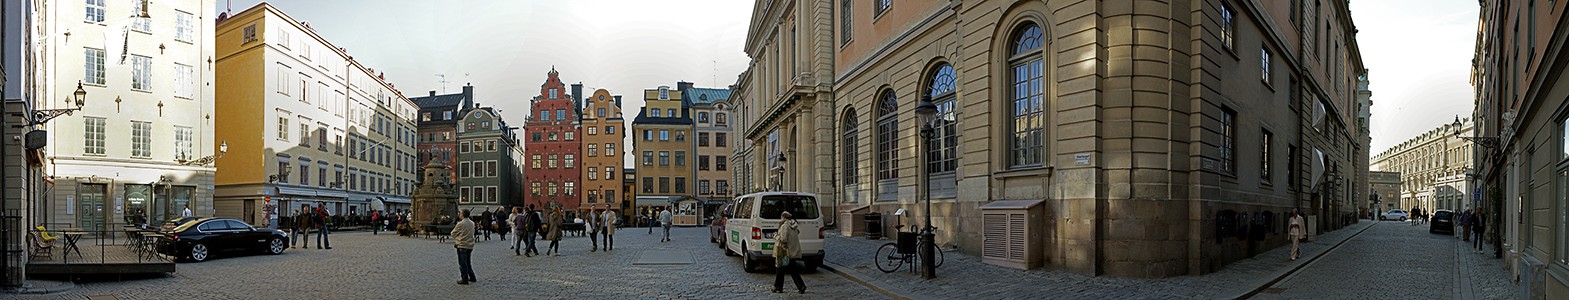 Altstadt Gamla stan: Stortorget Stockholm